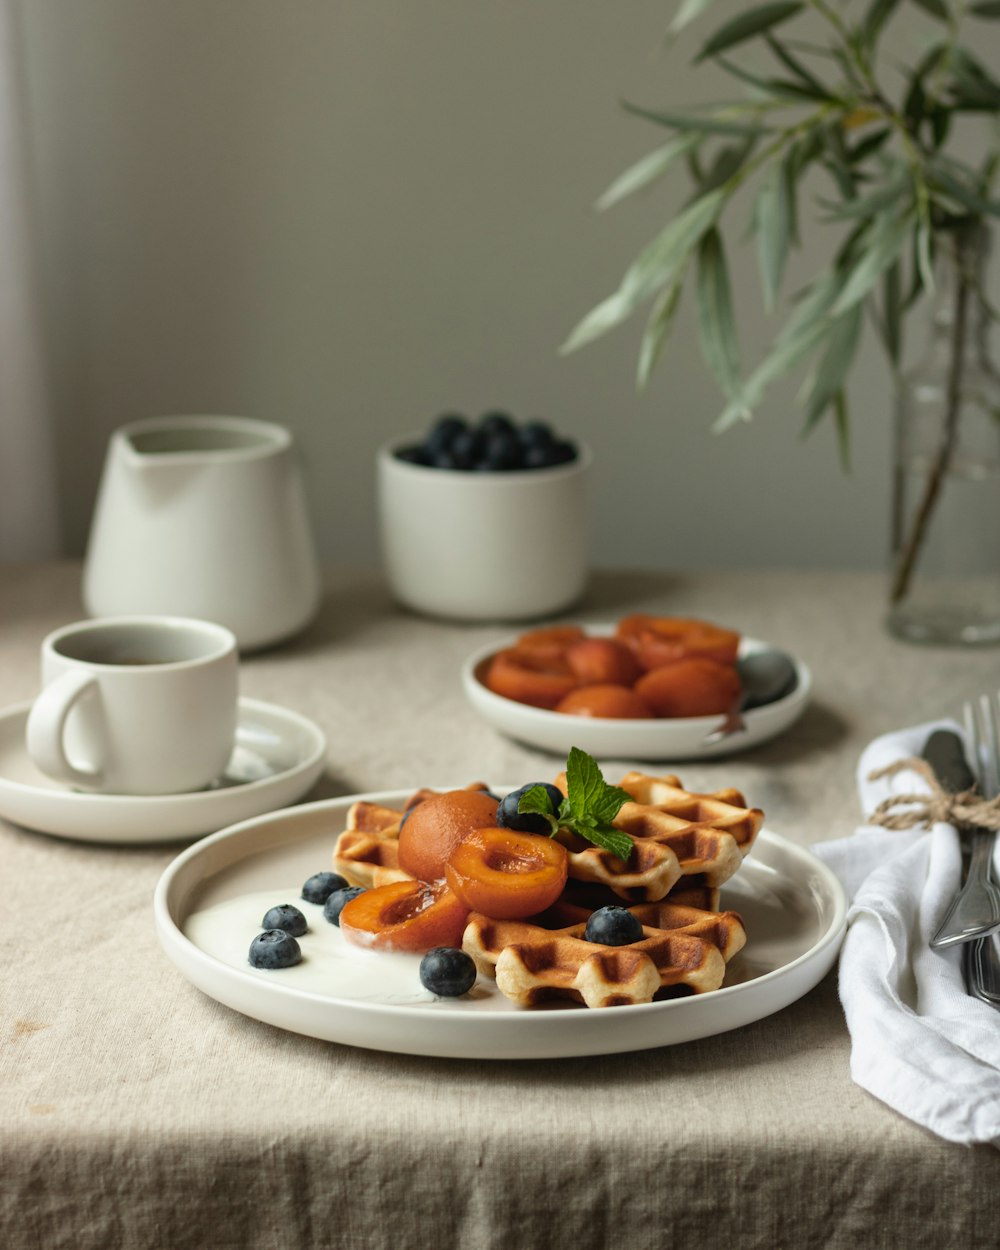 テーブルの上の白い陶器のマグカップの横の白い陶器の皿の上のスライスされたフルーツ